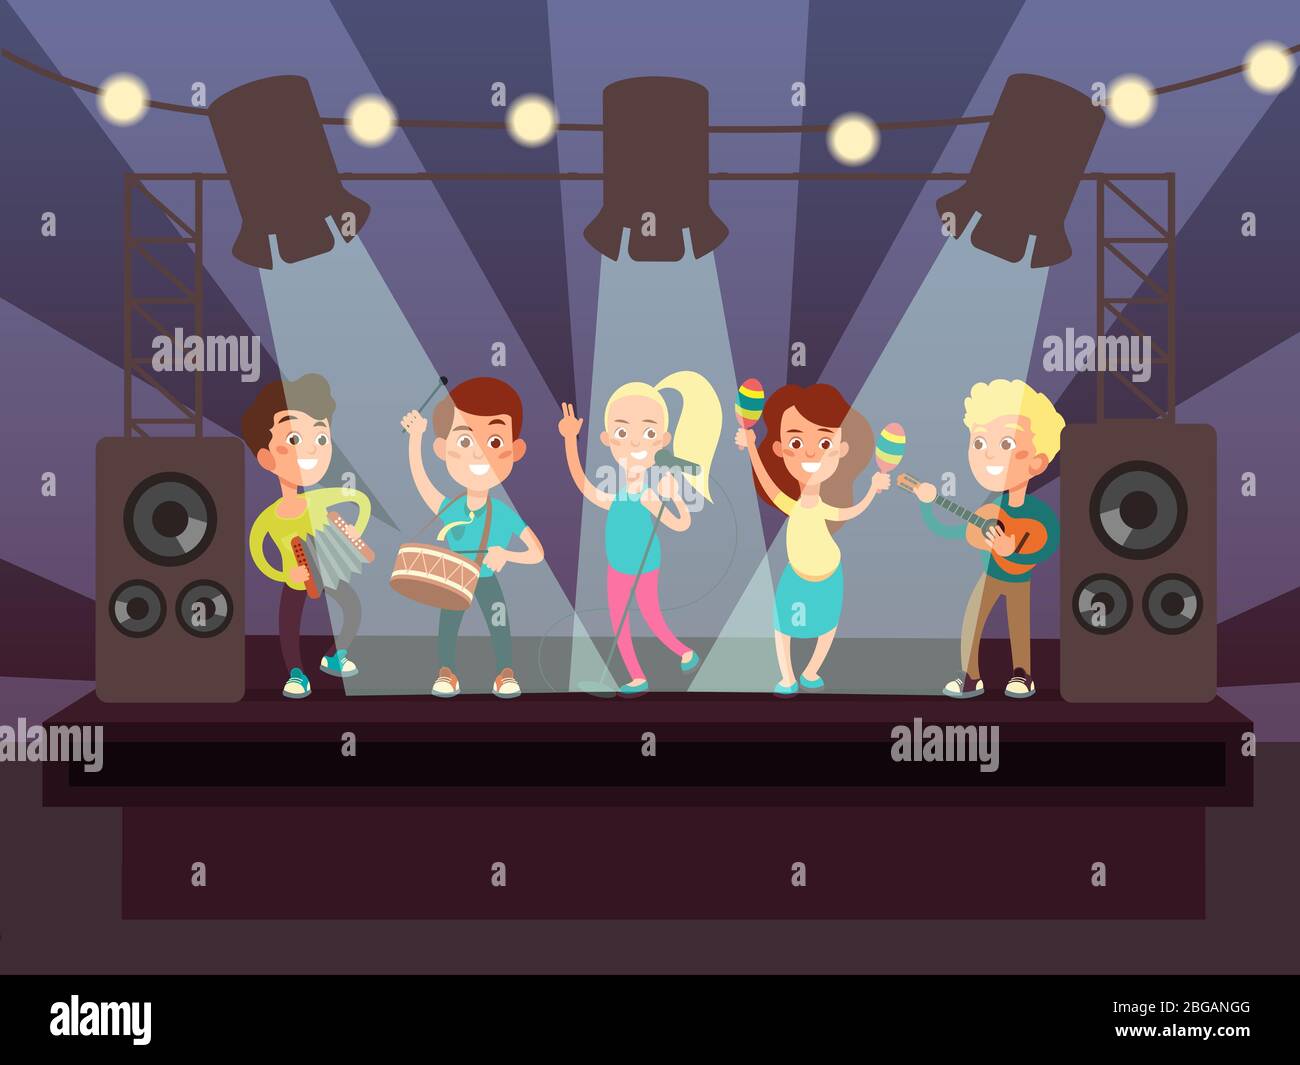 Espectáculo musical con banda infantil tocando rock en el escenario ilustración vectorial de dibujos animados. Concierto de música rock, músicos niños con interpretación de guitarra Ilustración del Vector